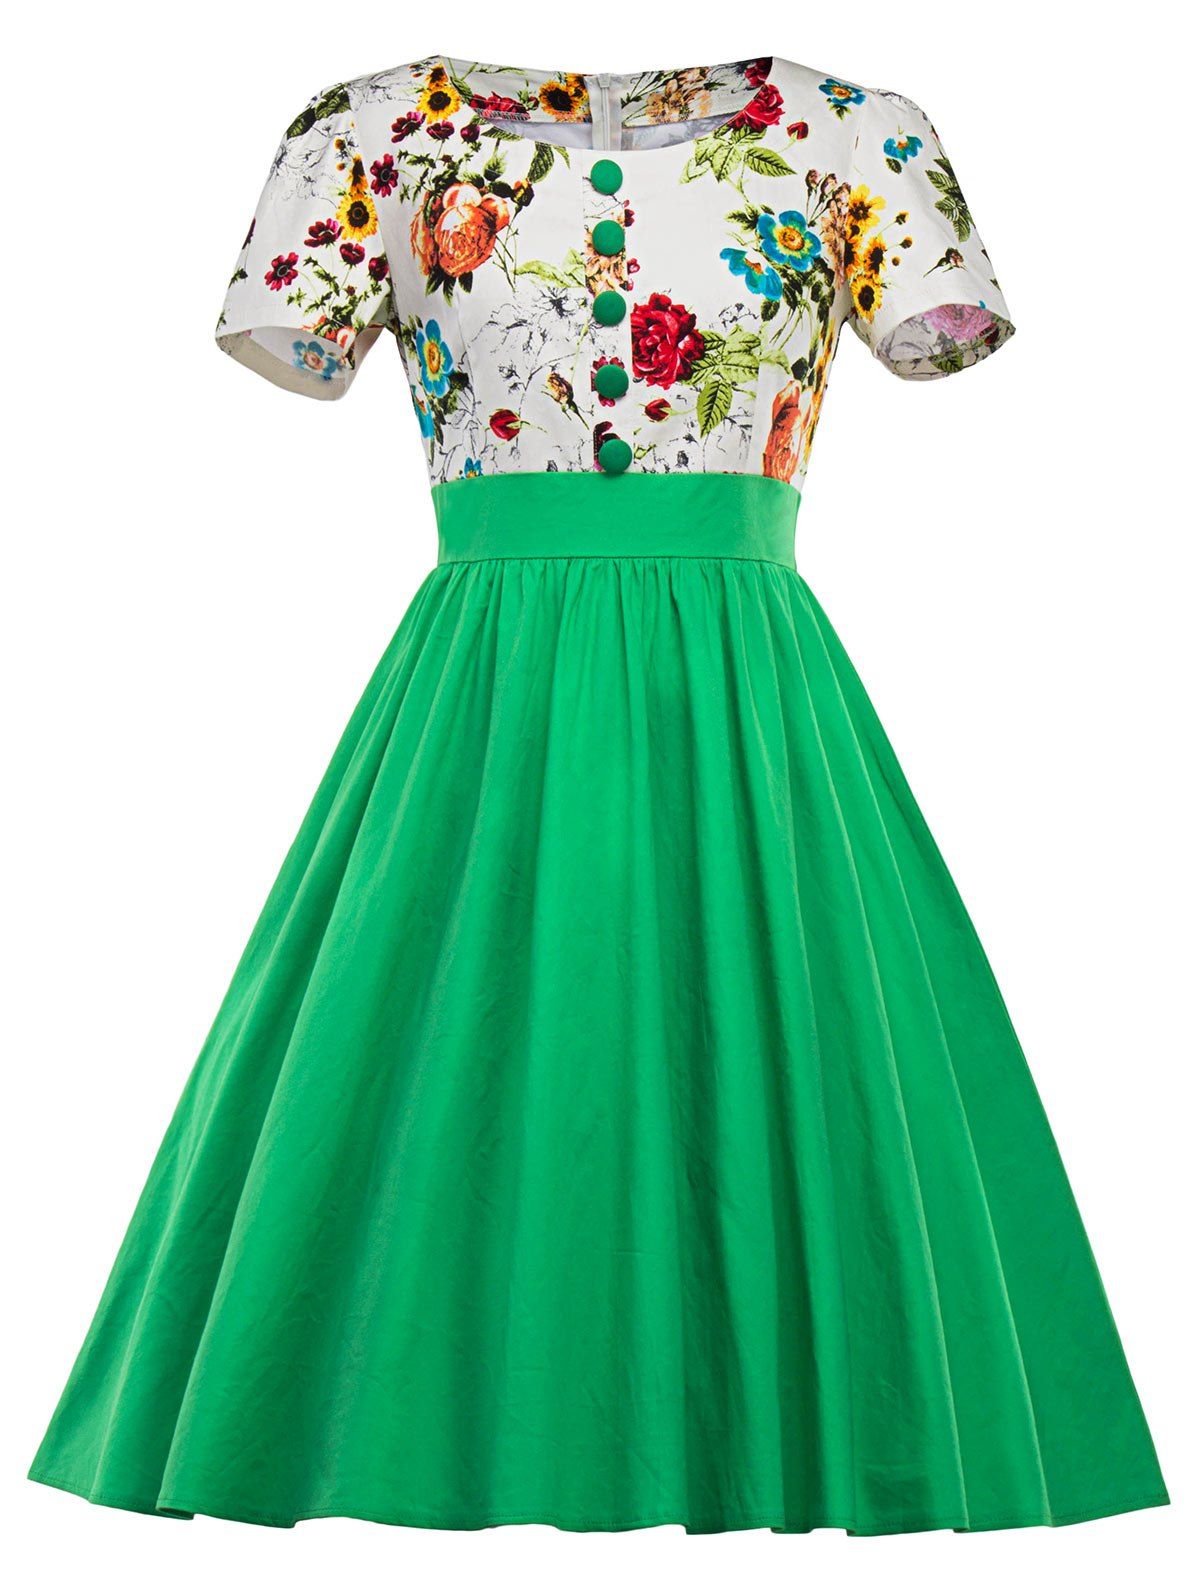 1950s swing dress